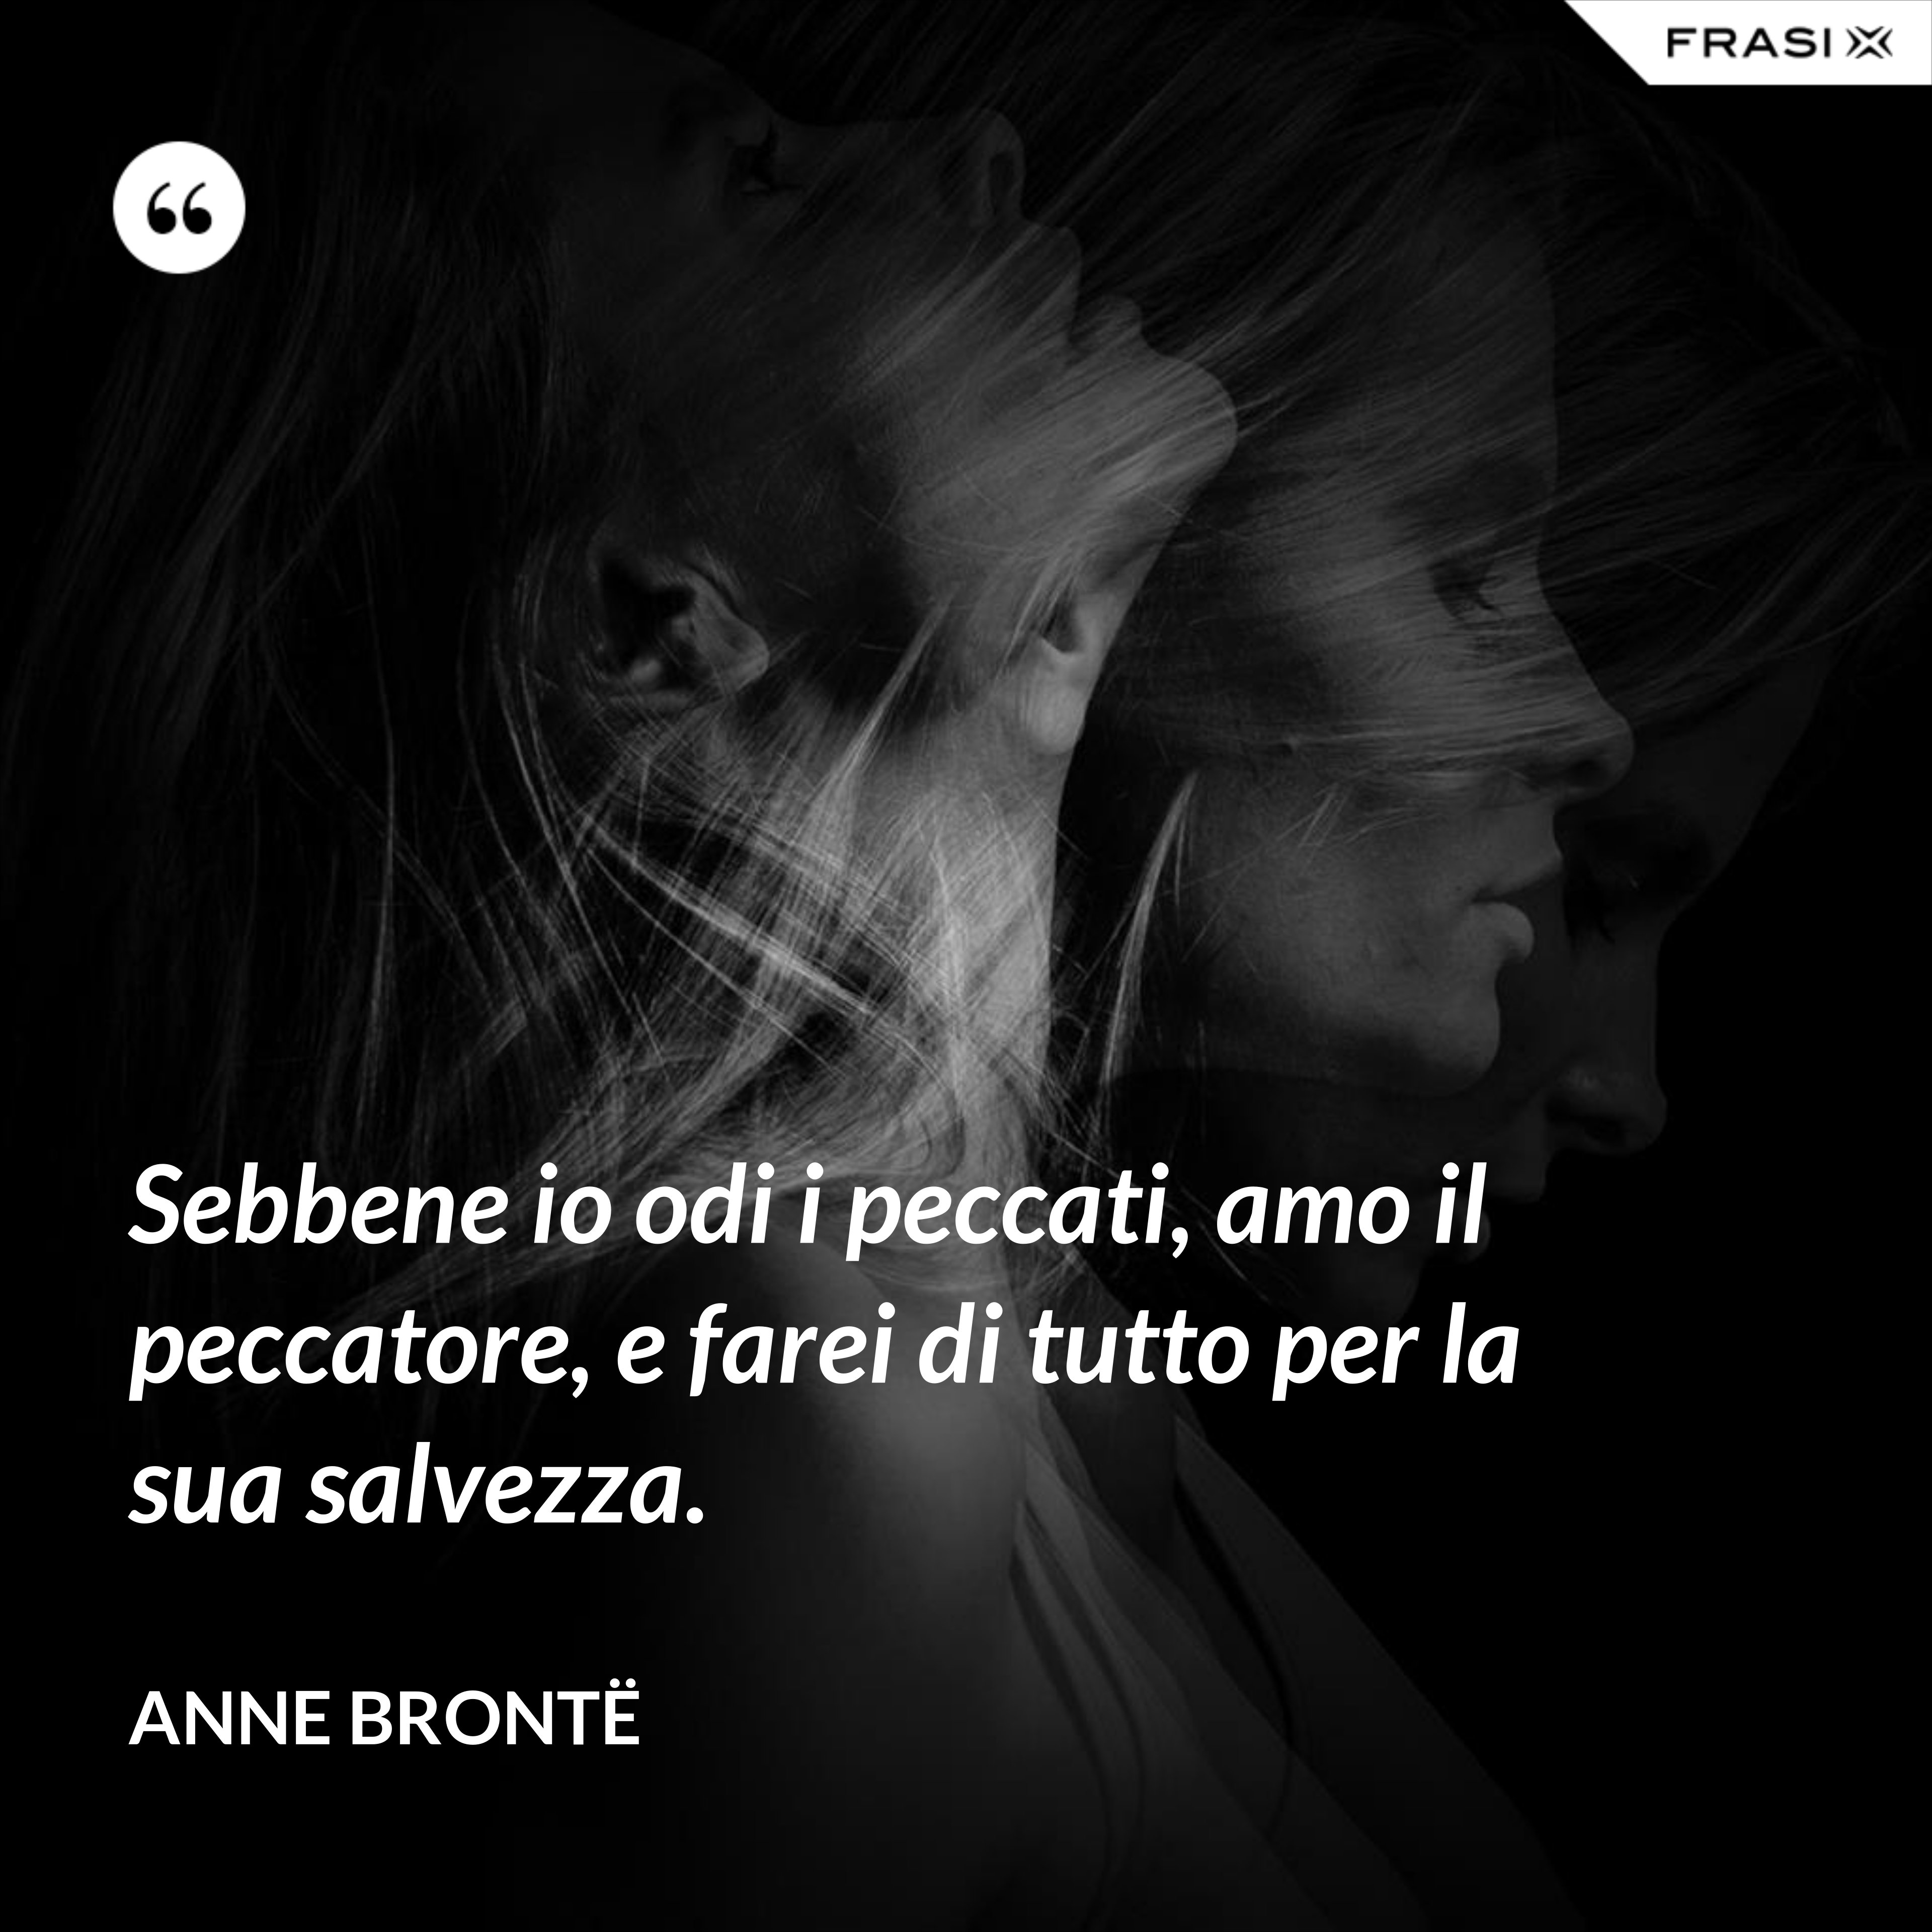 Sebbene io odi i peccati, amo il peccatore, e farei di tutto per la sua salvezza. - Anne Brontë